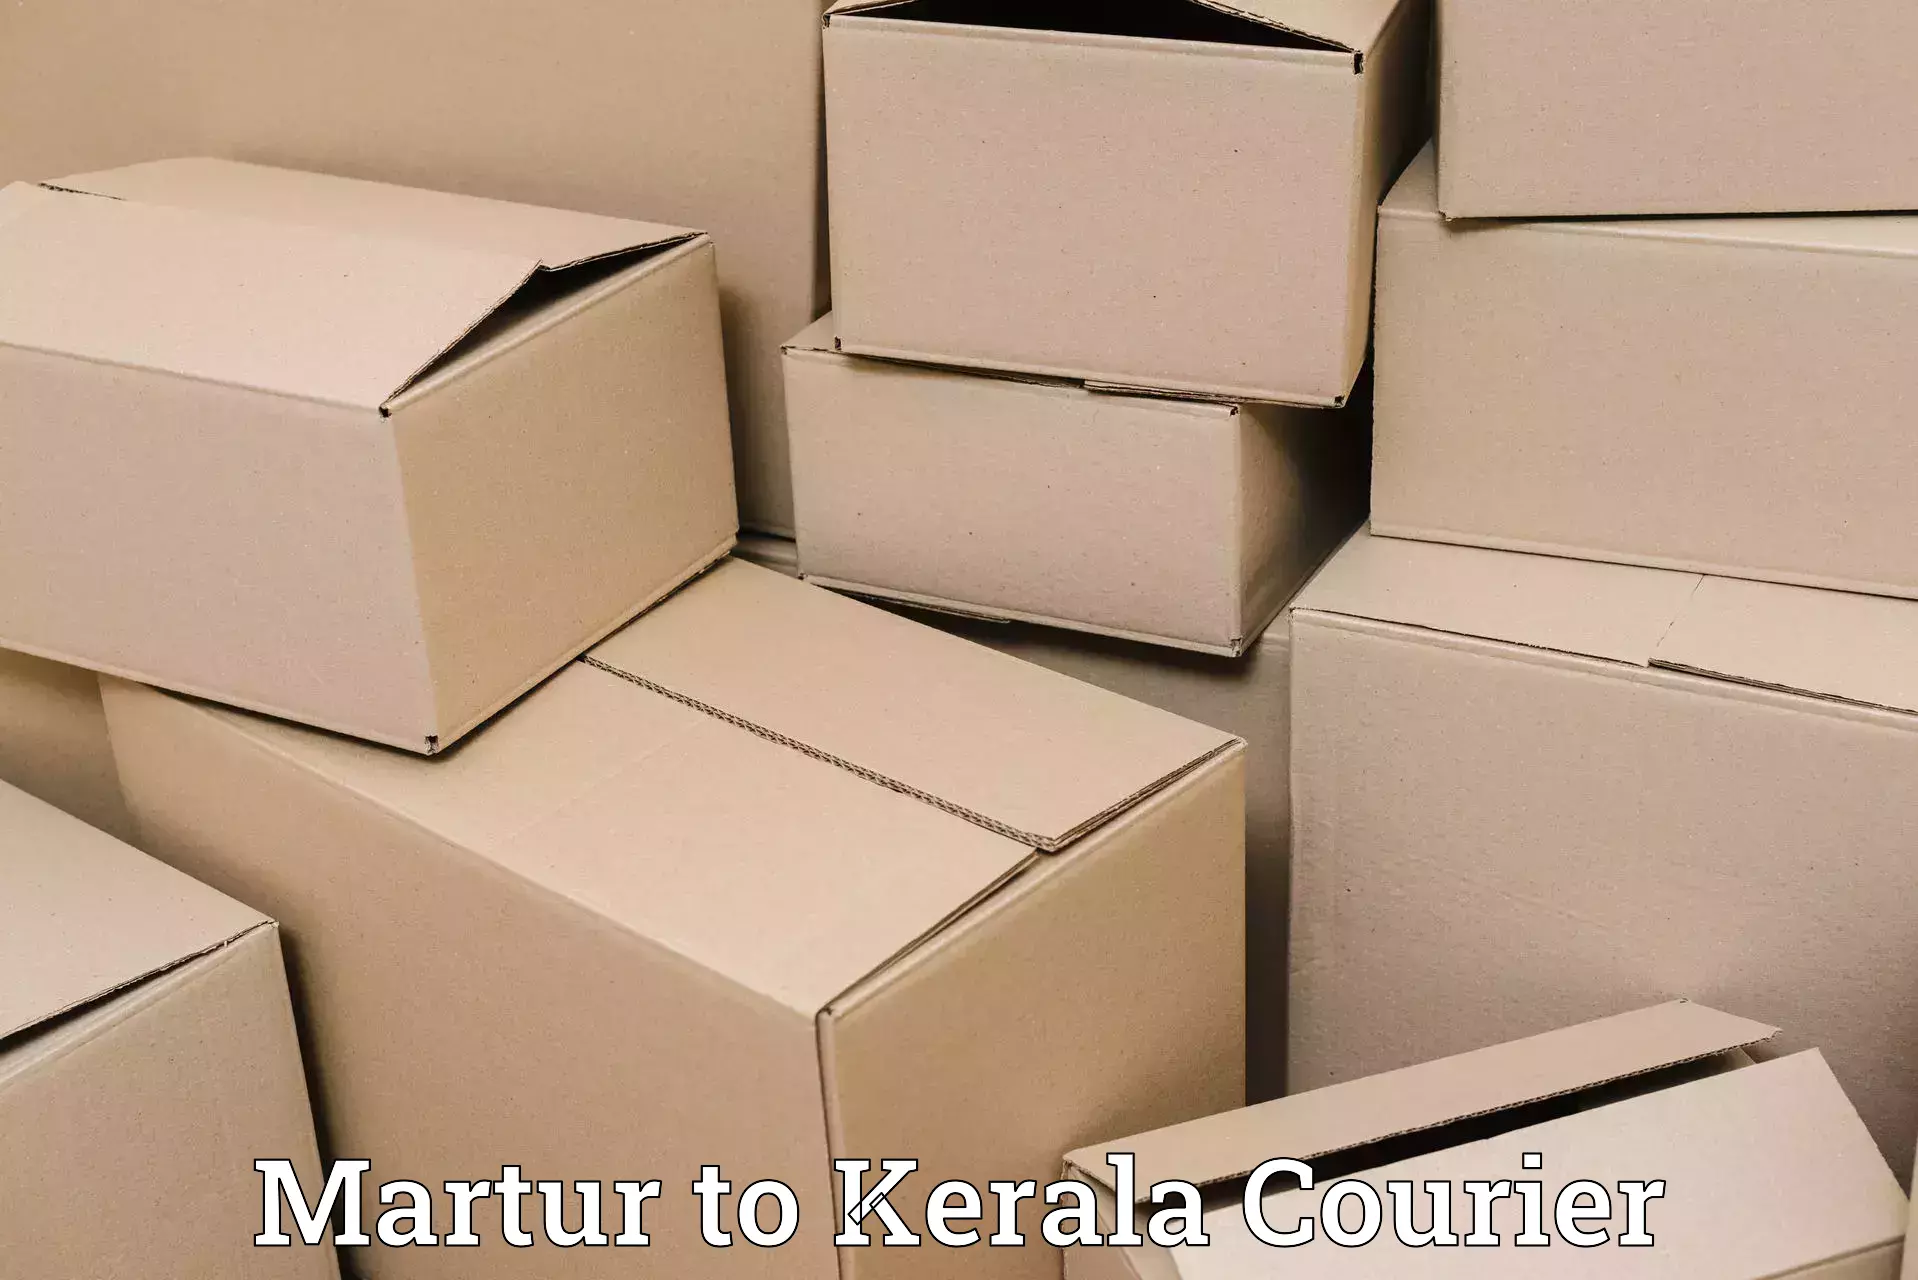 Multi-modal transport in Martur to Cochin